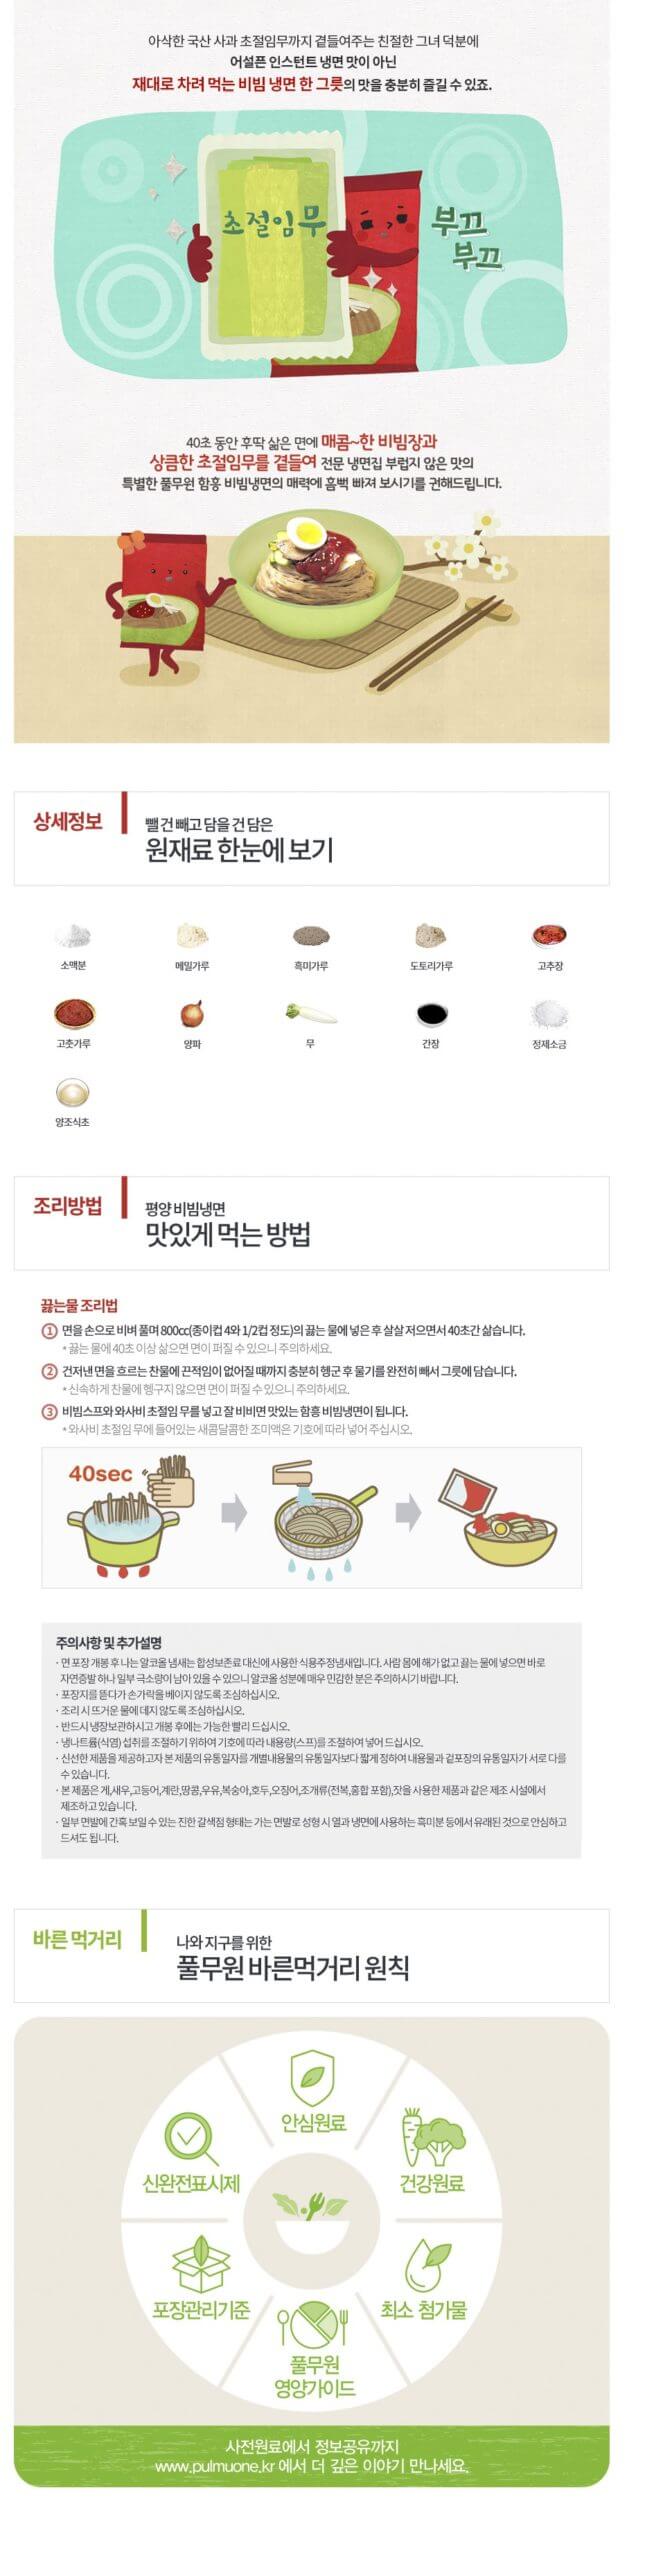 韓國食品-[풀무원] 함흥비빔냉면 460g